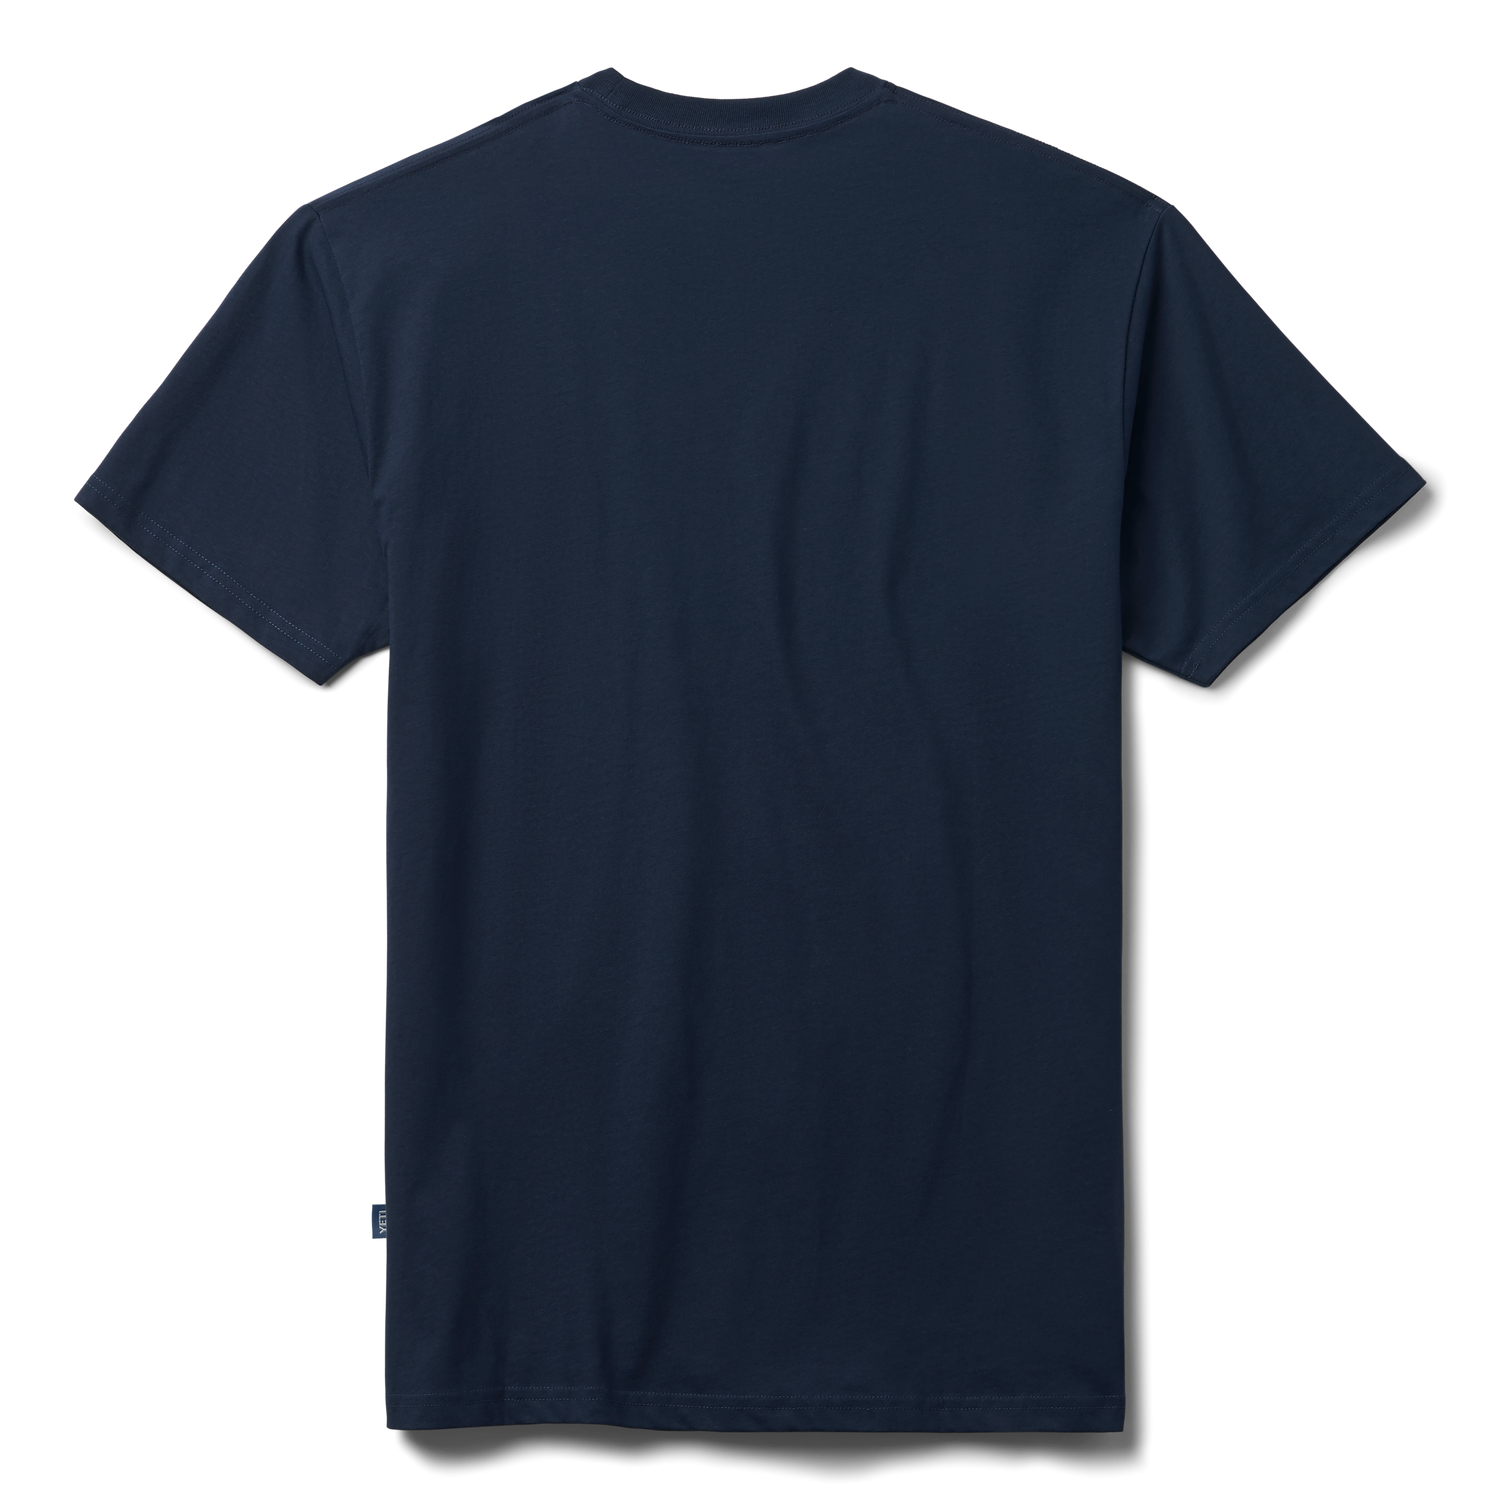 YETI Premium Logo Badge Kurzarm-Shirt Navy/Weiss